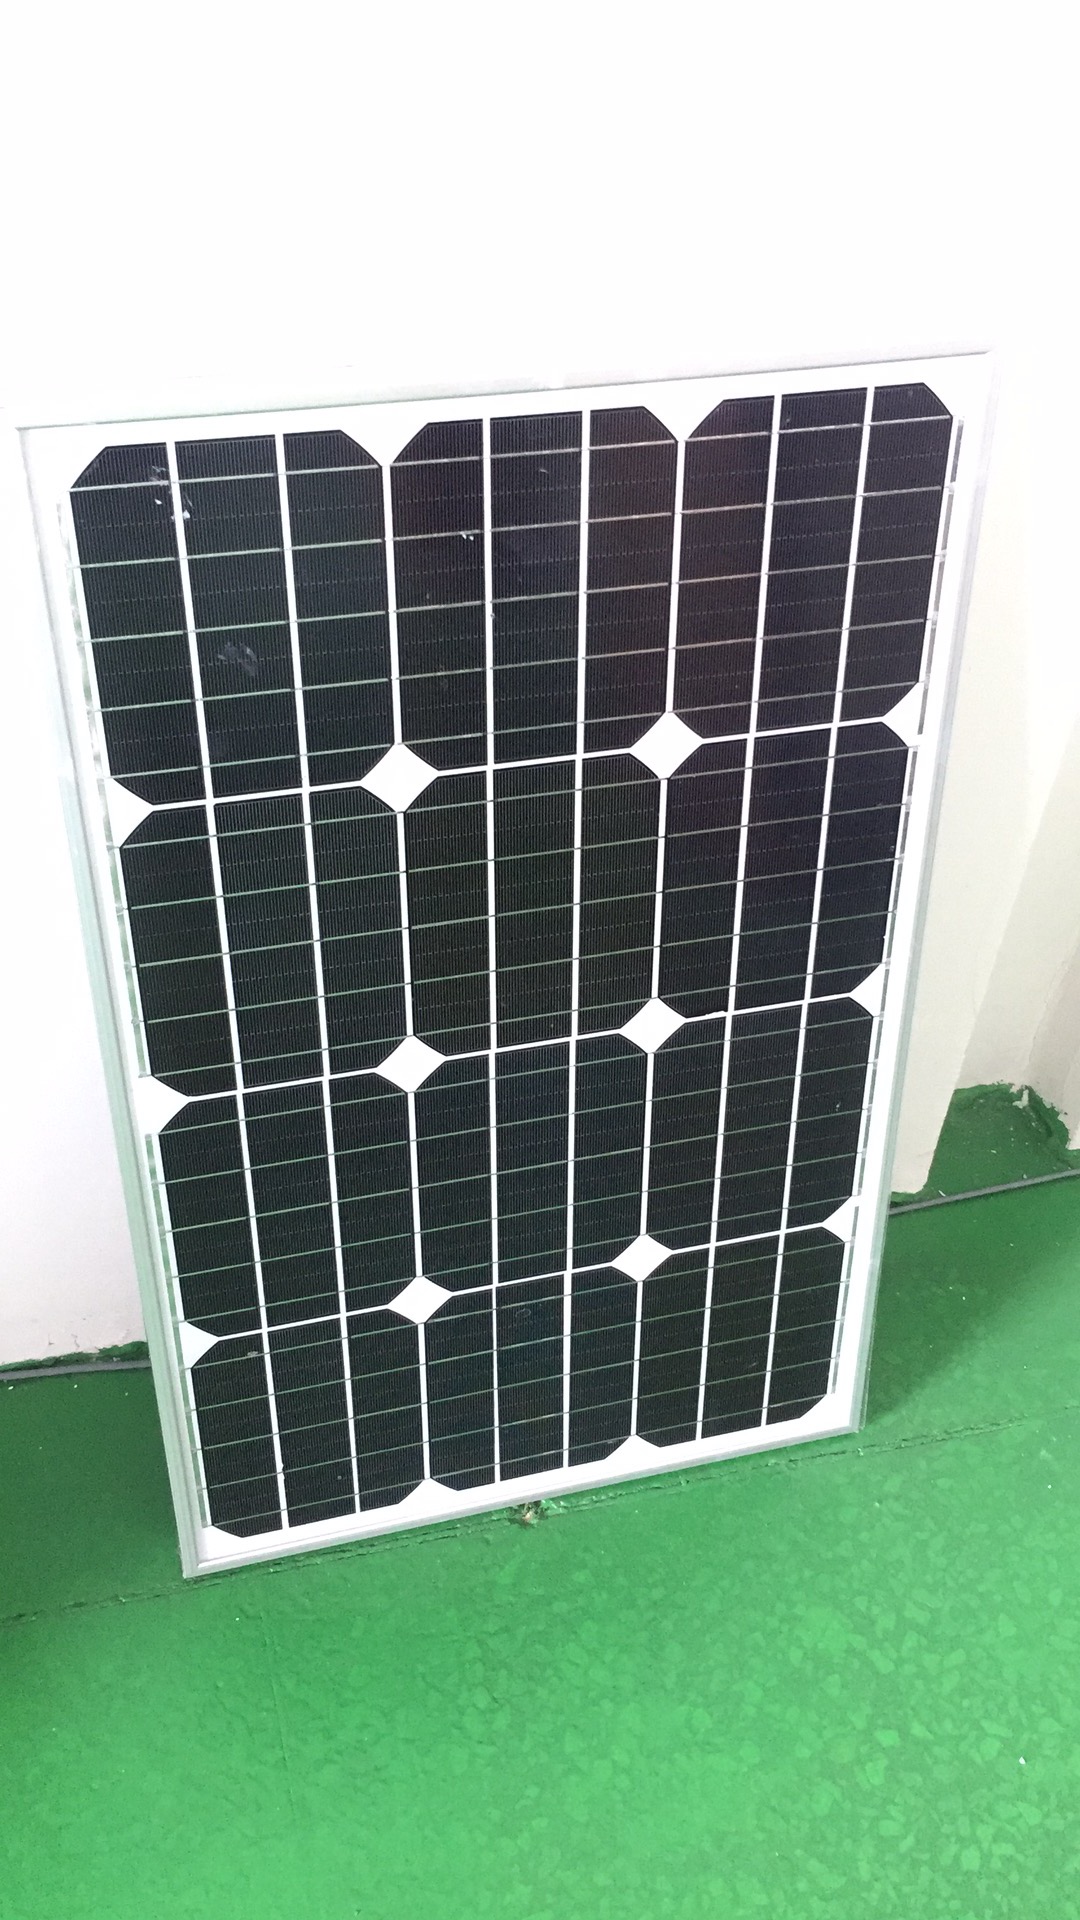 太阳能电池板 太阳能板厂家直销 太阳能板定制 太阳能板定做 太阳能板定做哪家好 太阳能板生产厂家 中山太阳能板厂家图片